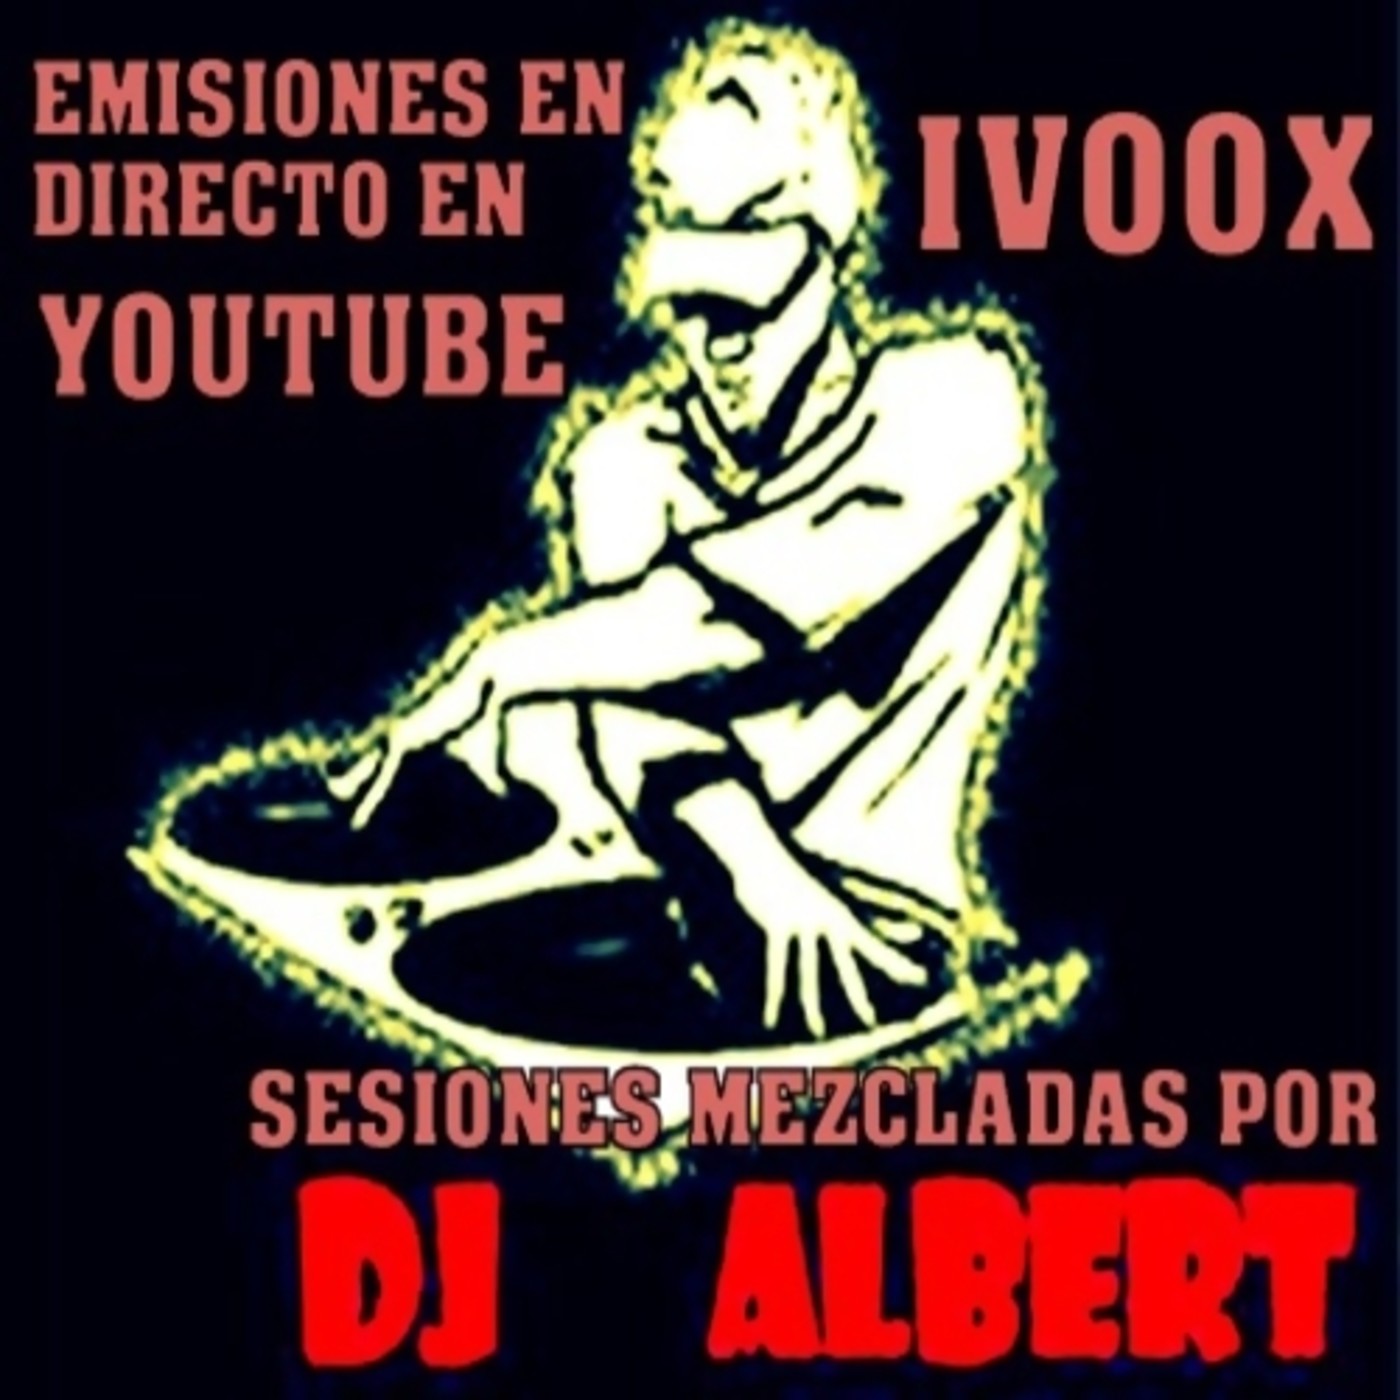 VIVA LA FIESTA (Techno Music Remember) VOL. 2 Mezclado por DJ Albert